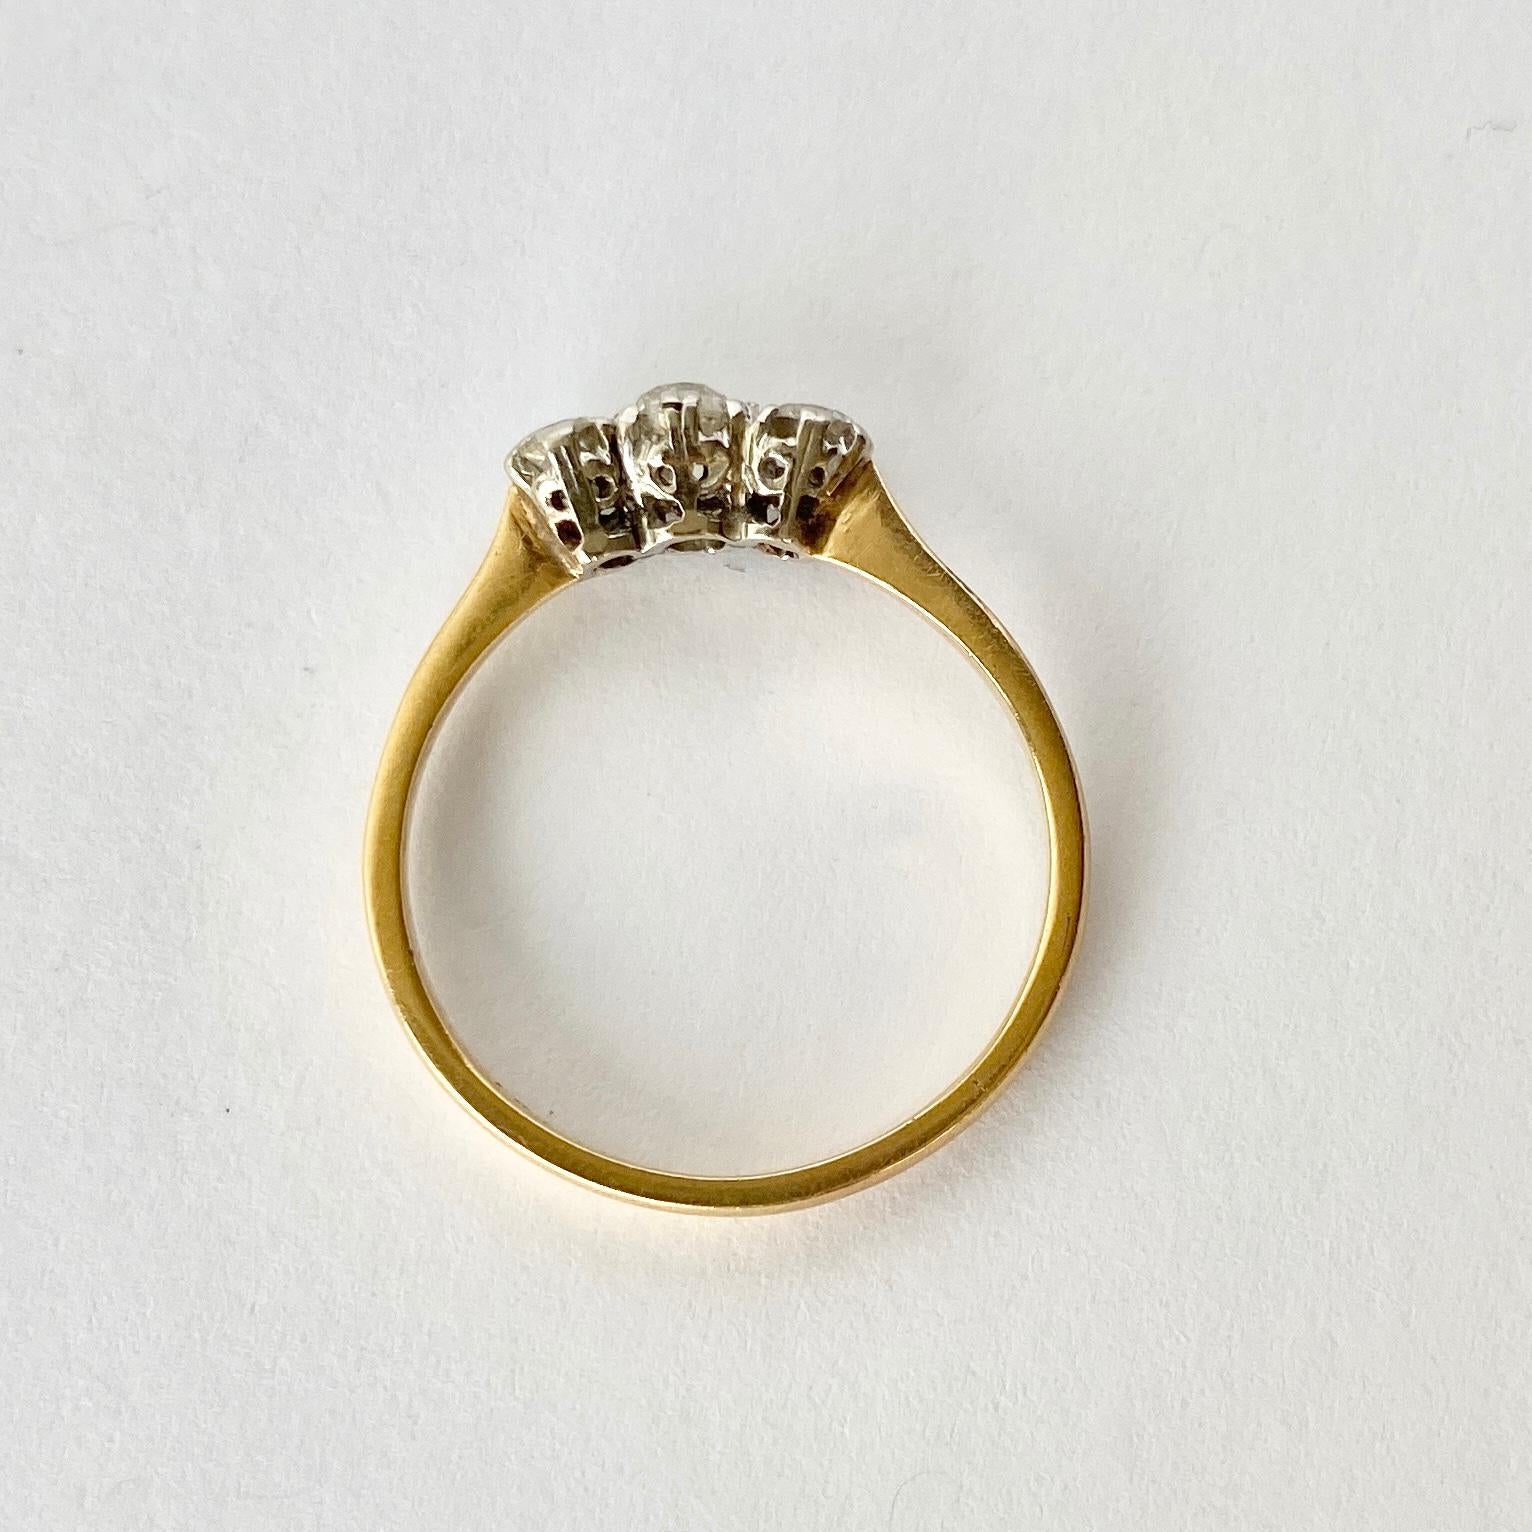 Les diamants de cette bague totalisant 55pts et de taille européenne ancienne sont brillants et étincelants. Ils sont maintenus par des griffes en platine très subtiles sur un bracelet en or 18 carats. 

Taille de l'anneau : Q ou 8 

Poids : 2.6g